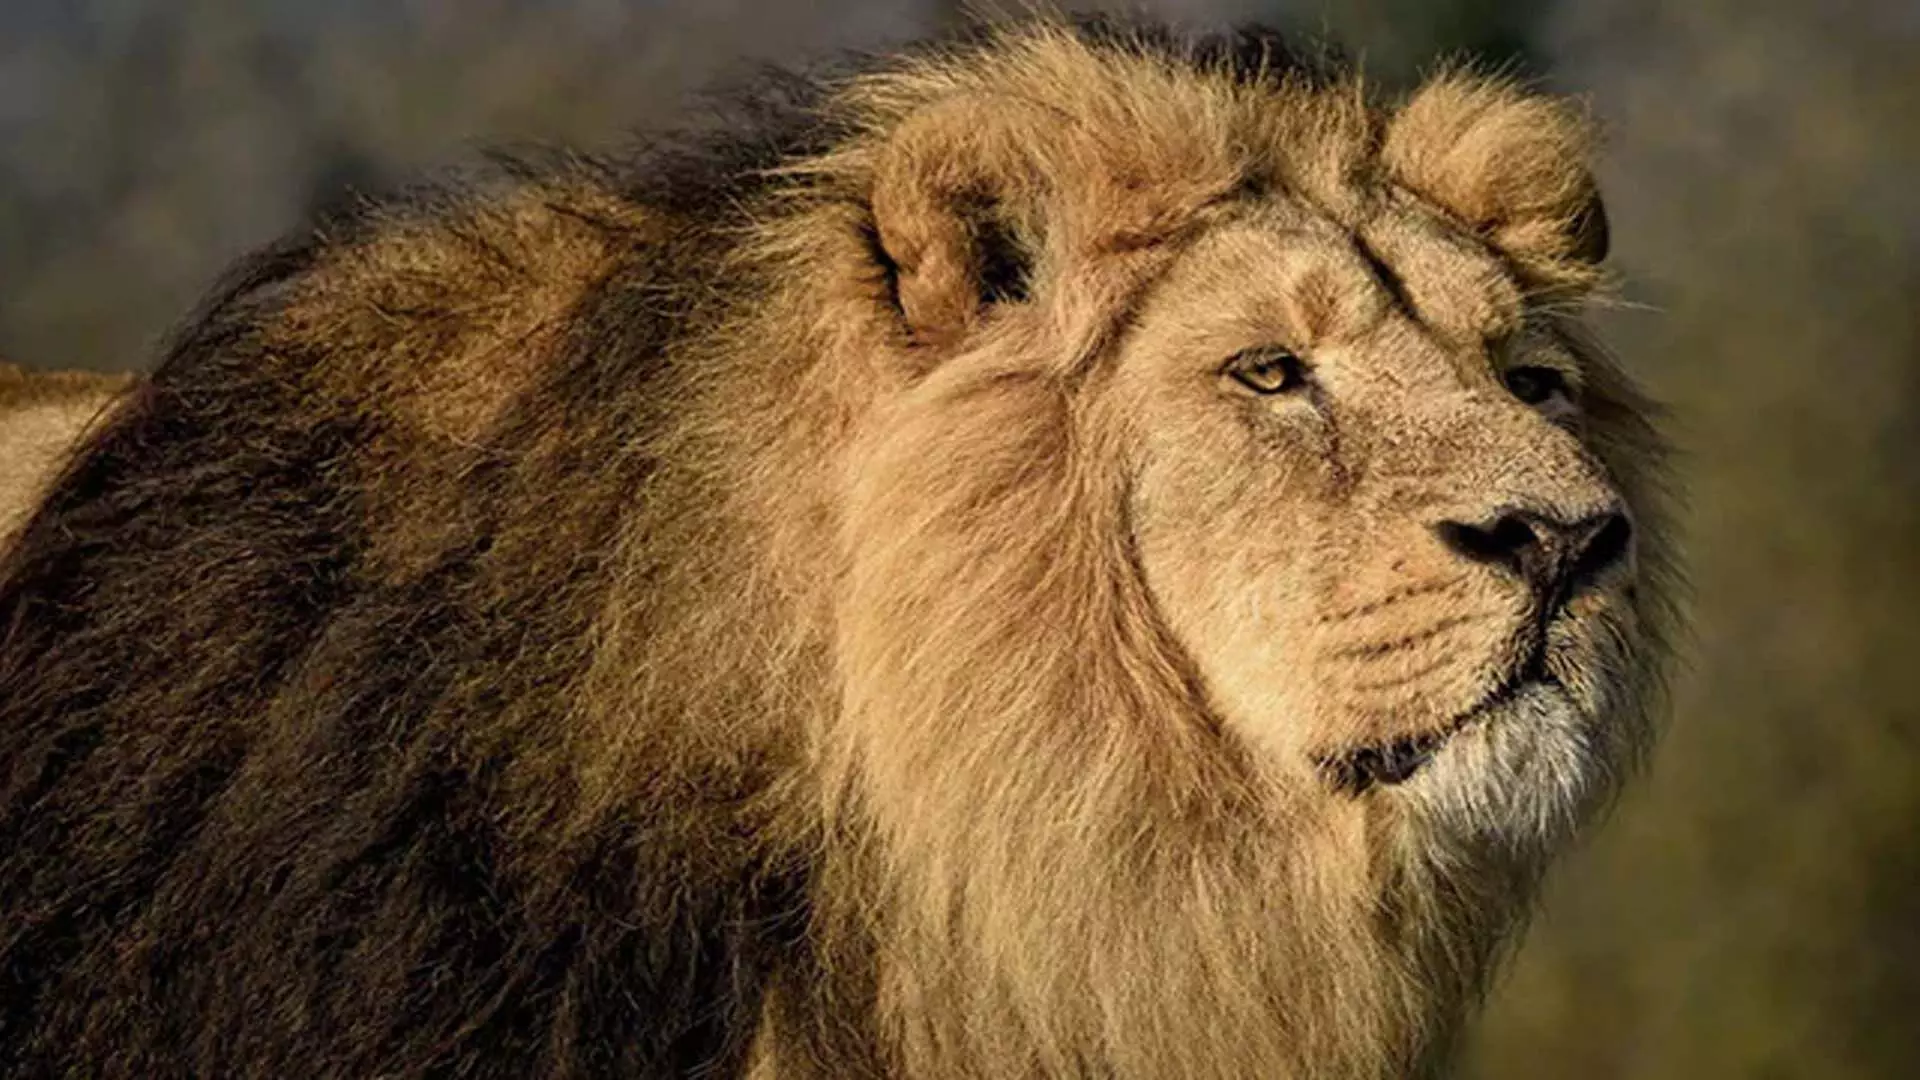 नाइजीरियाई चिड़ियाघर संचालक को शेर ने मार डाला, जिसे उसने जन्म से ही पाला था